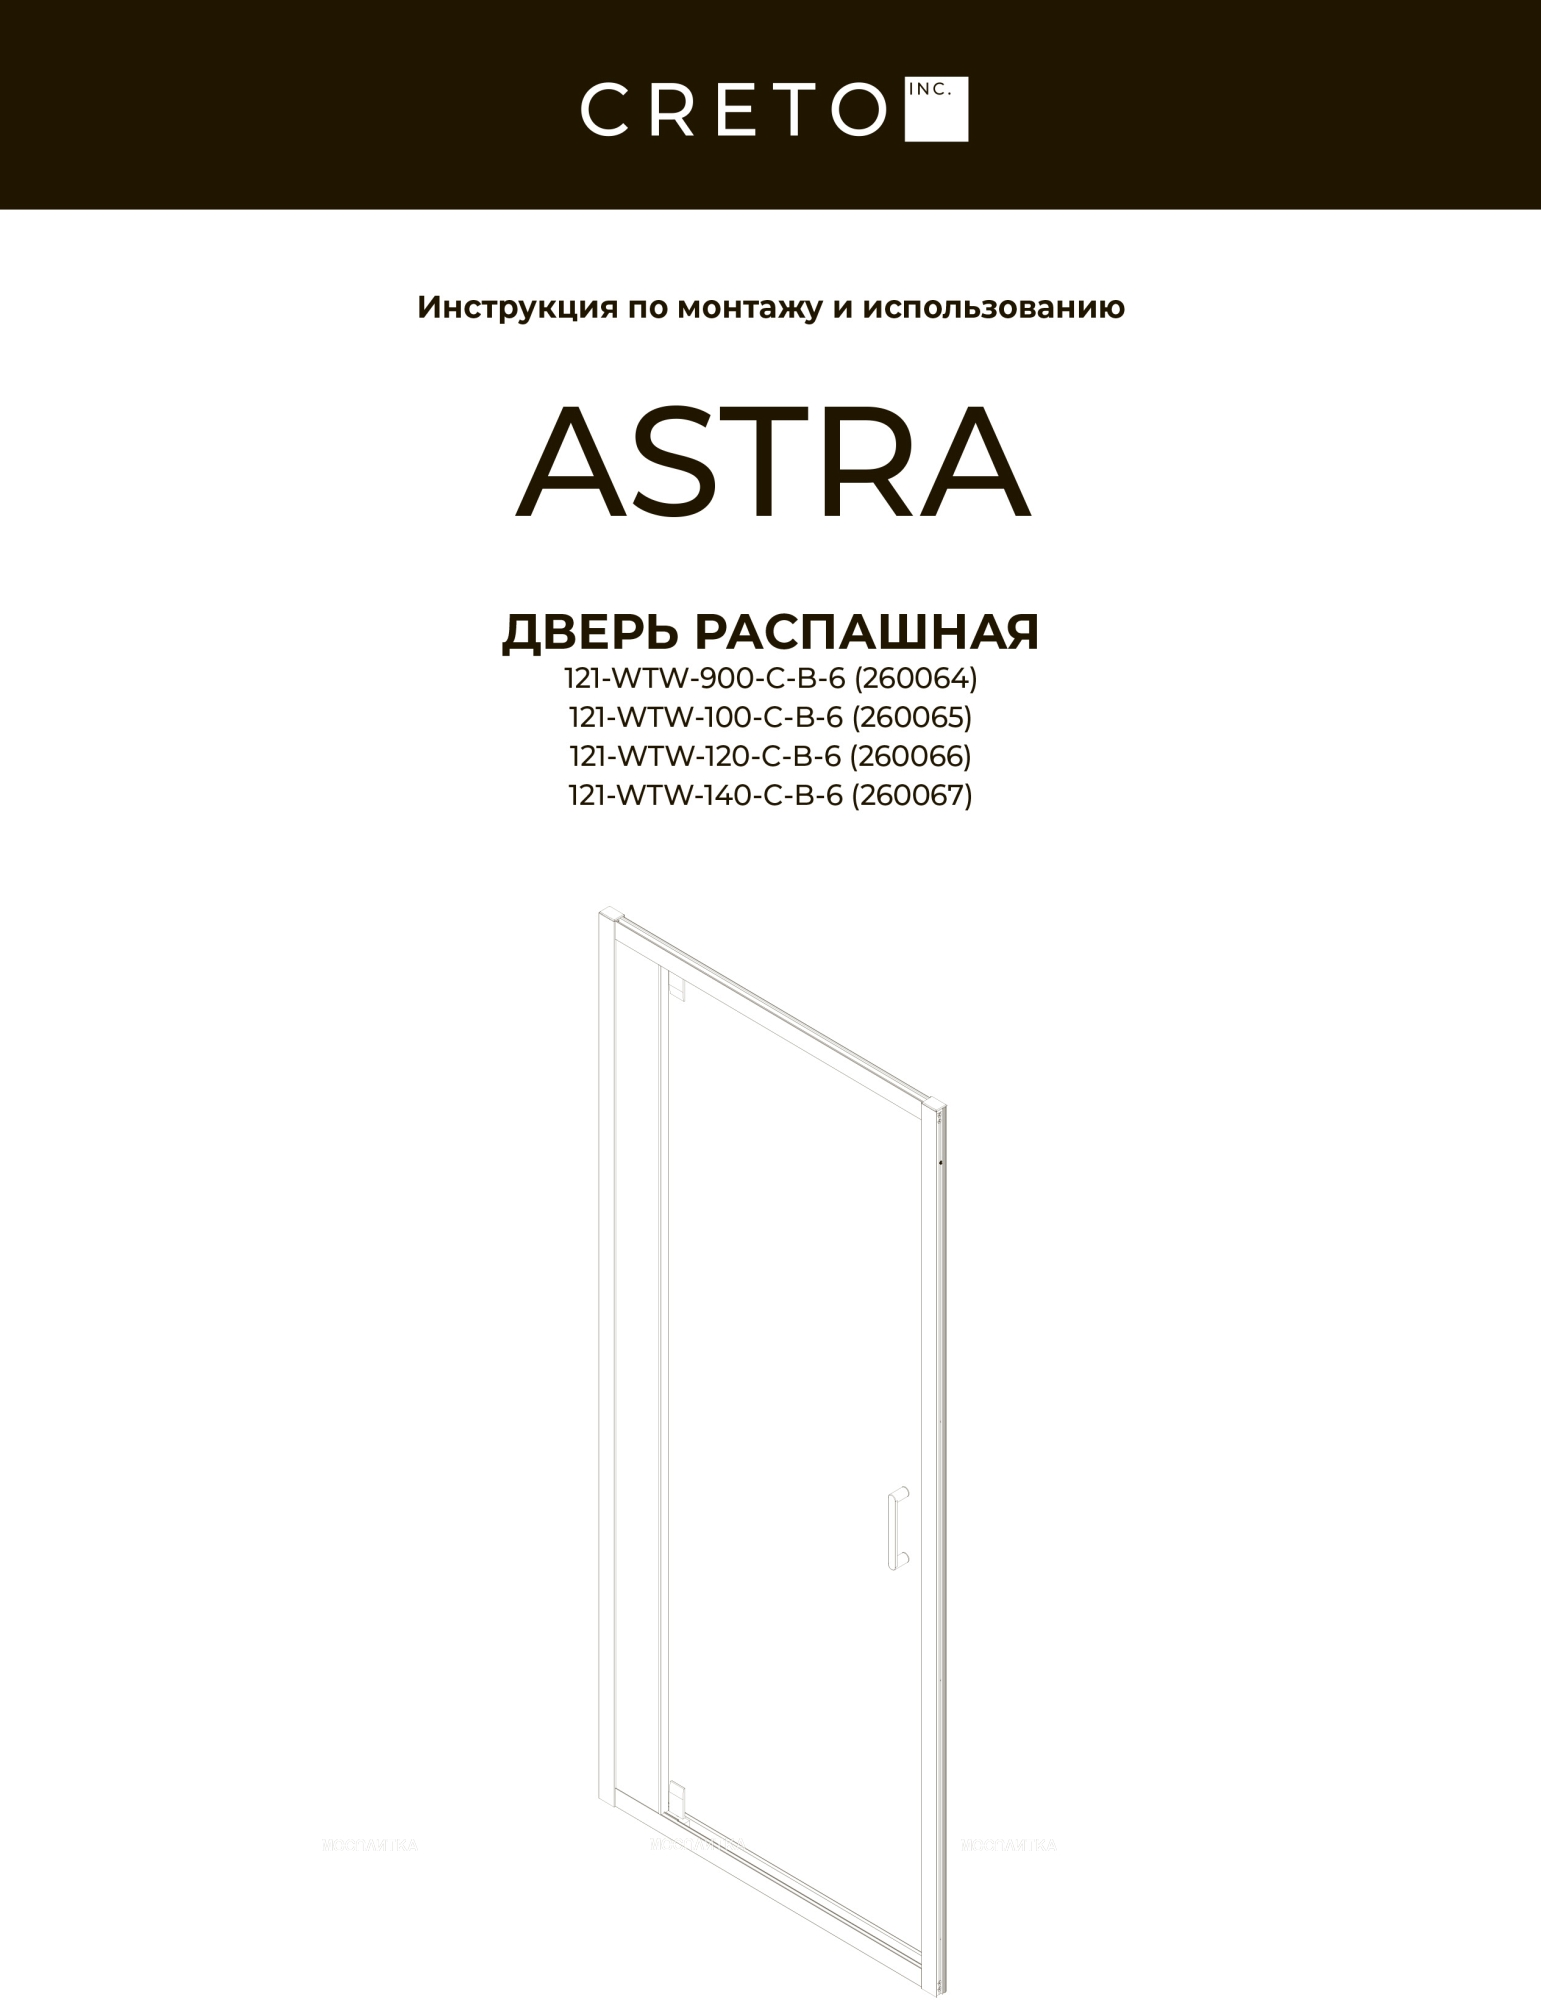 Душевой уголок Creto Astra стекло прозрачное профиль черный 140х90 см, 121-WTW-140-C-B-6 + 121-SP-900-C-B-6 - изображение 4